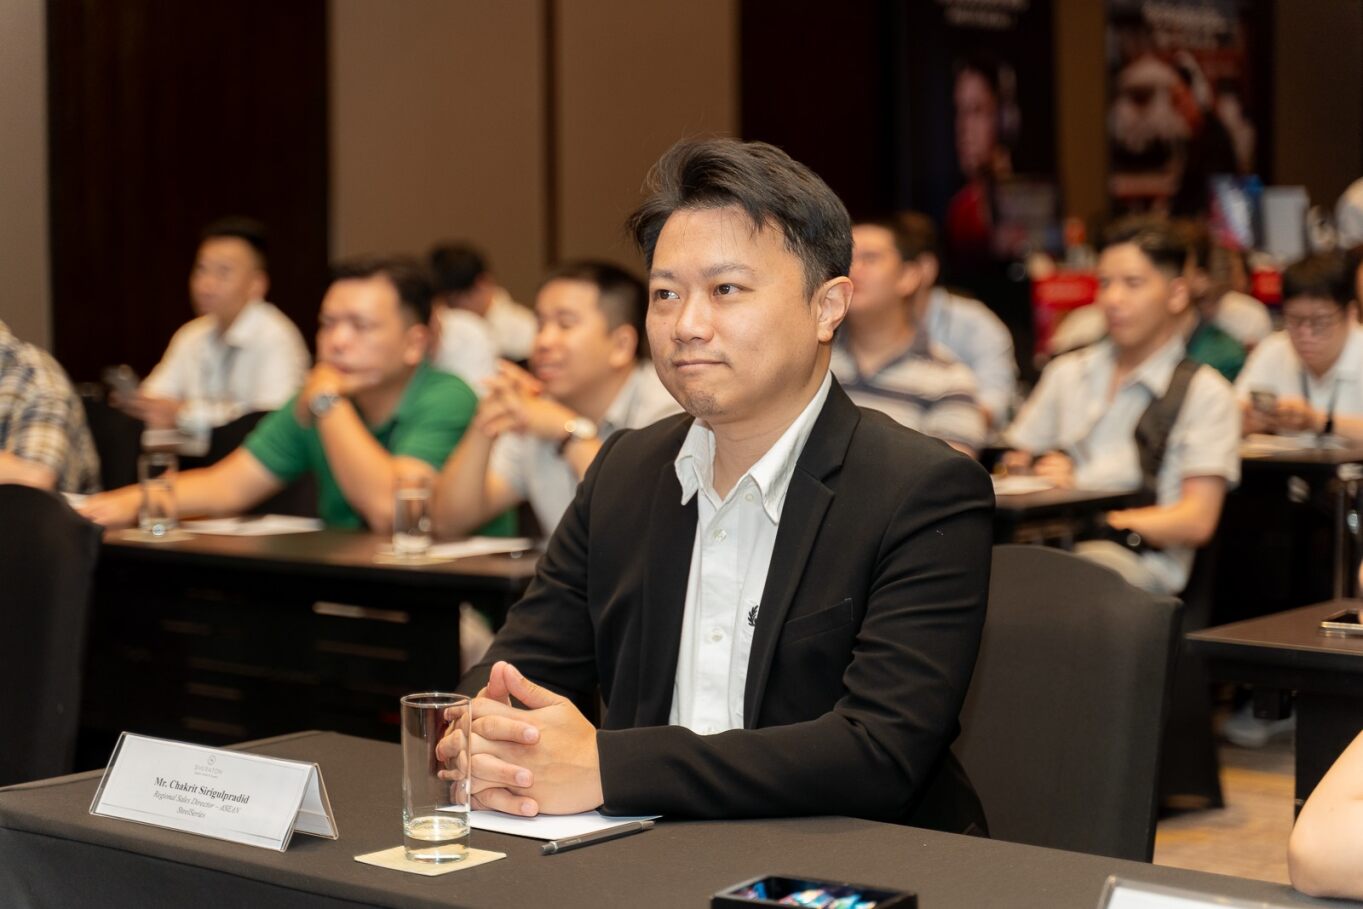 SteelSeries chính thức ra mắt nhà phân phối mới duy nhất tại Việt Nam cùng hàng loạt sản phẩm mới.